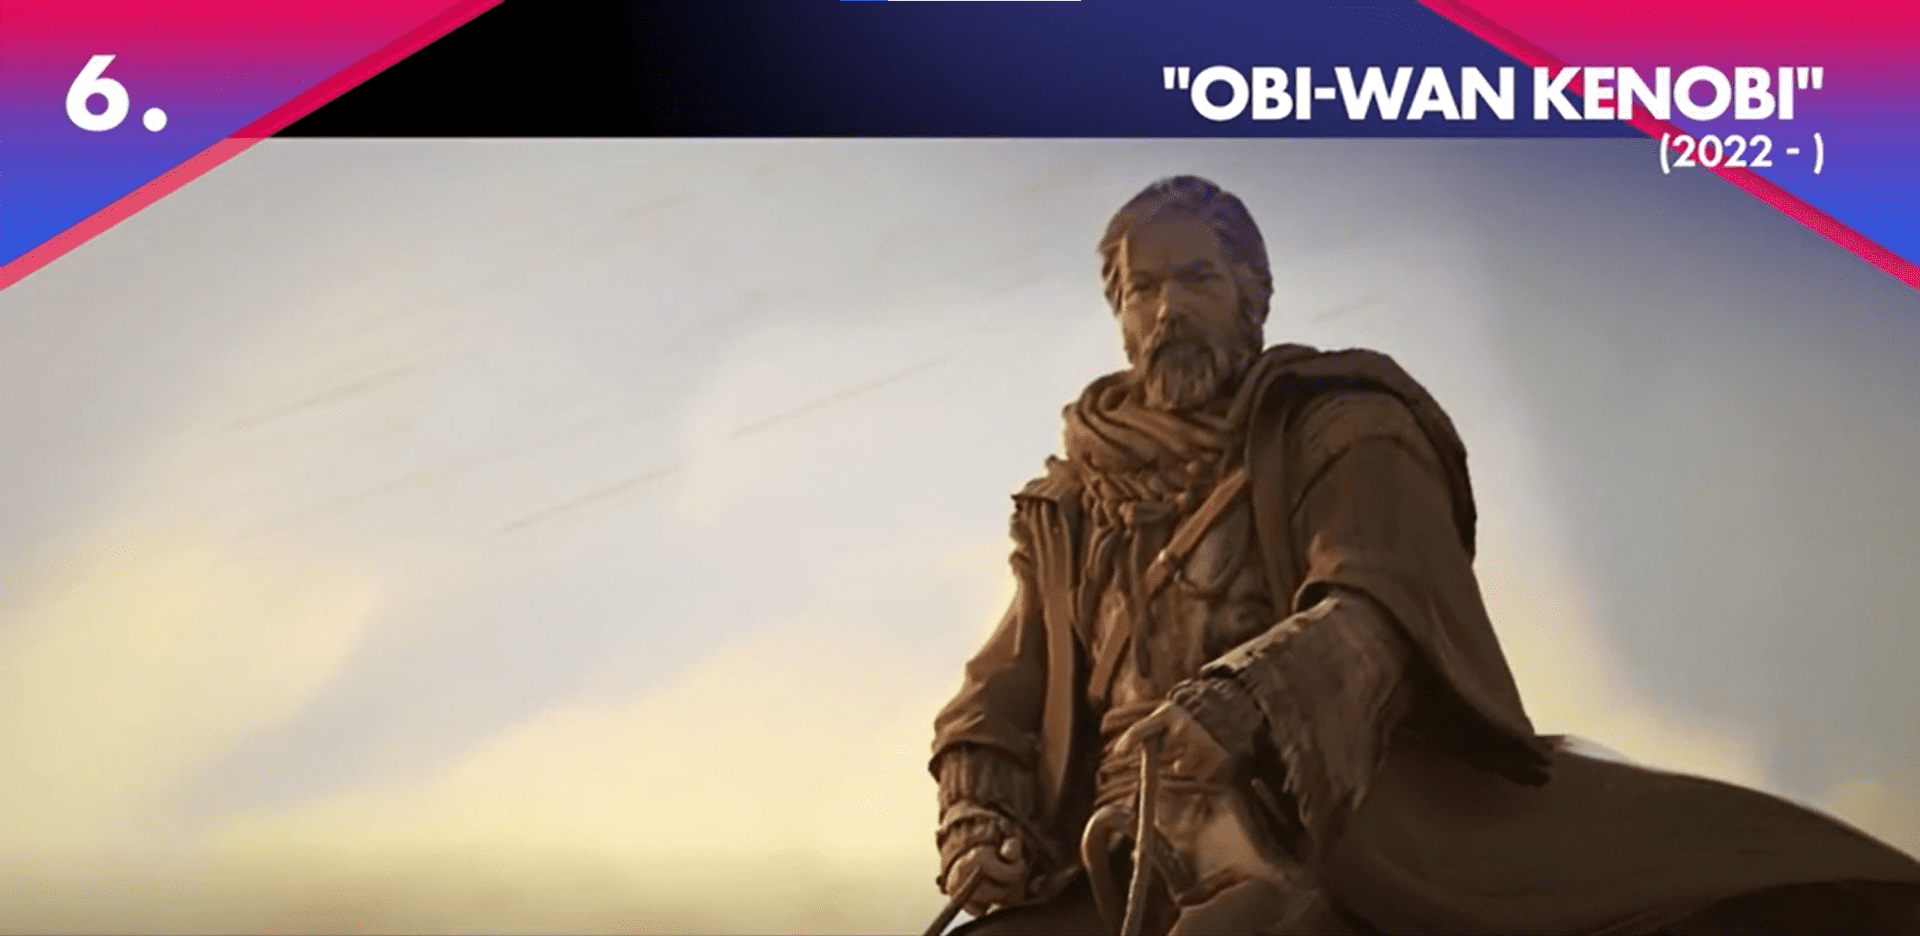 Оби-Ван Кеноби - самый ожидаемый сериал 2022 года